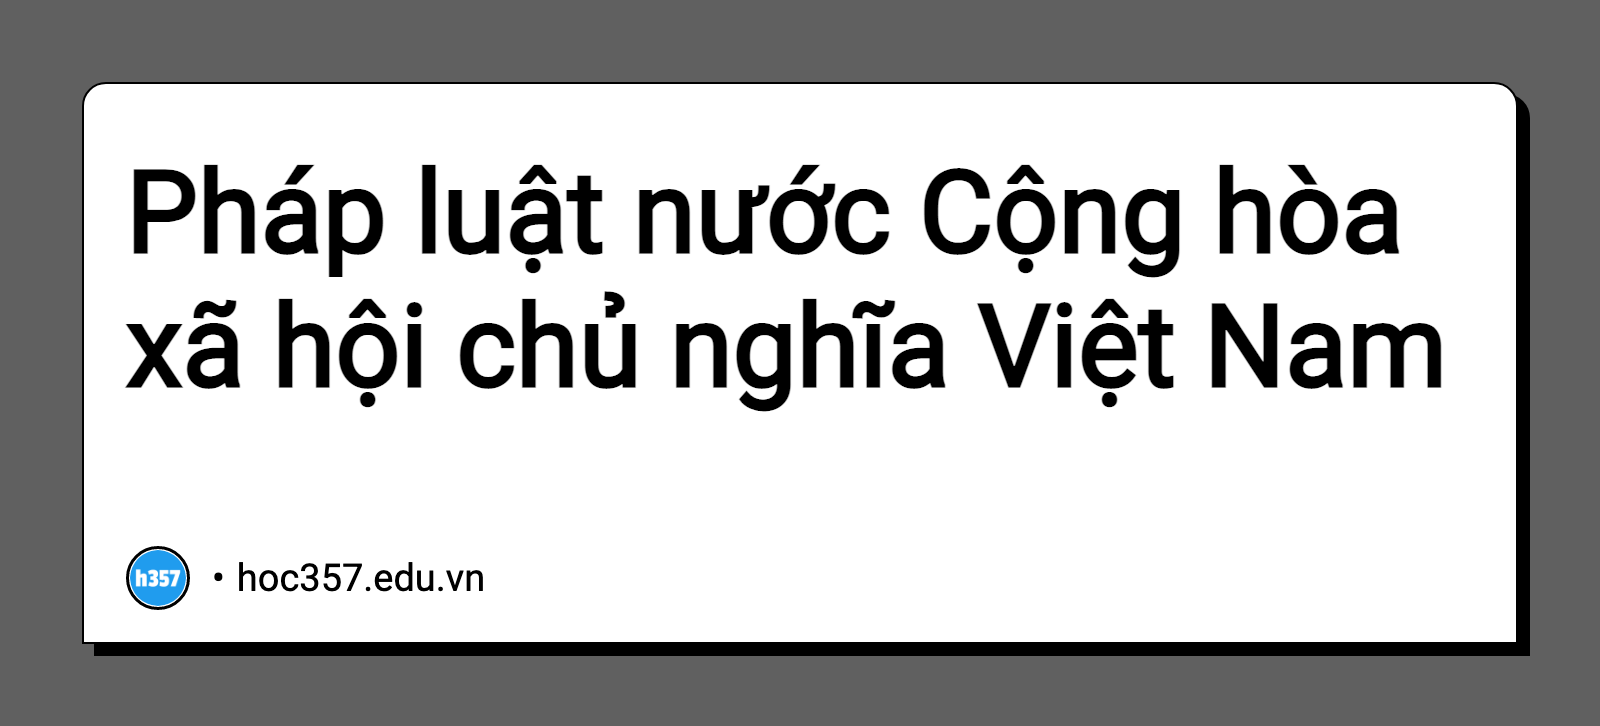 Hình minh họa Pháp luật nước Cộng hòa xã hội chủ nghĩa Việt Nam